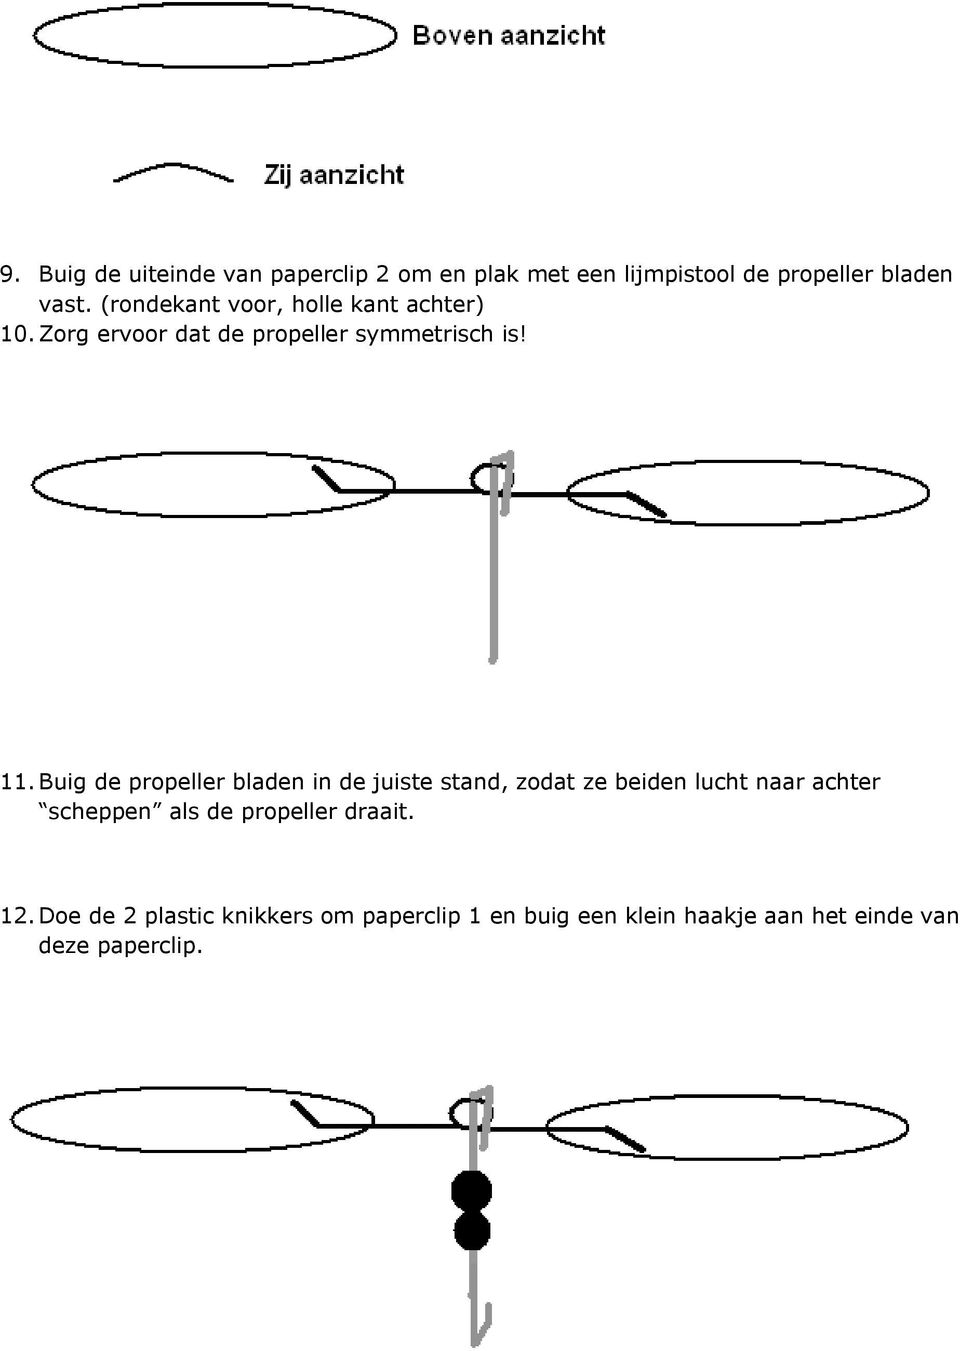 Buig de propeller bladen in de juiste stand, zodat ze beiden lucht naar achter scheppen als de